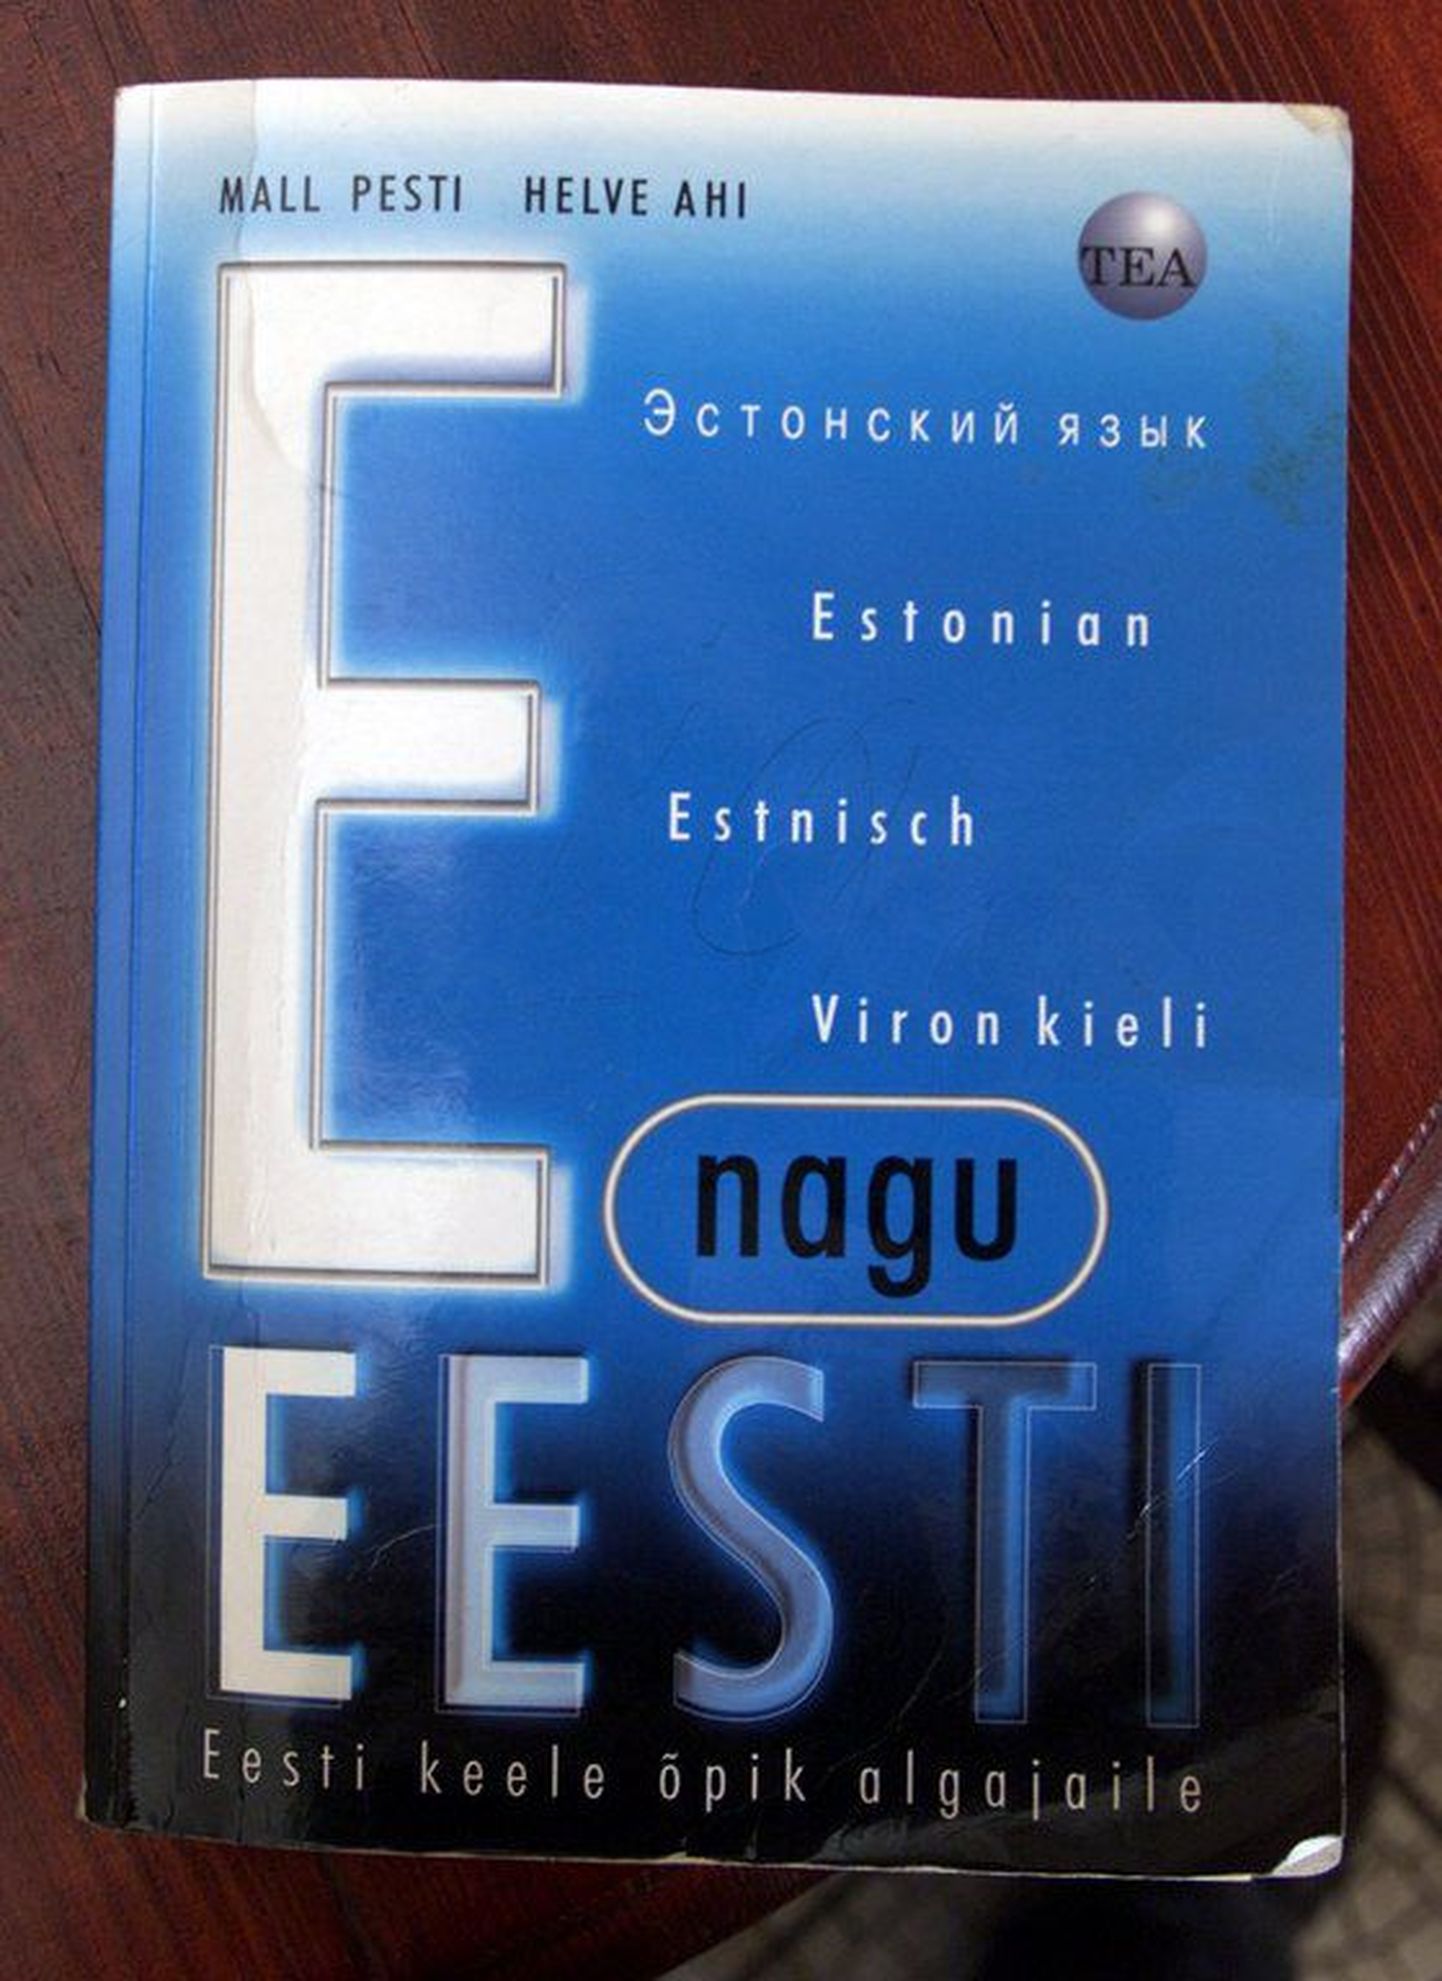 Учебник эстонского языка. Иллюстративное фото.